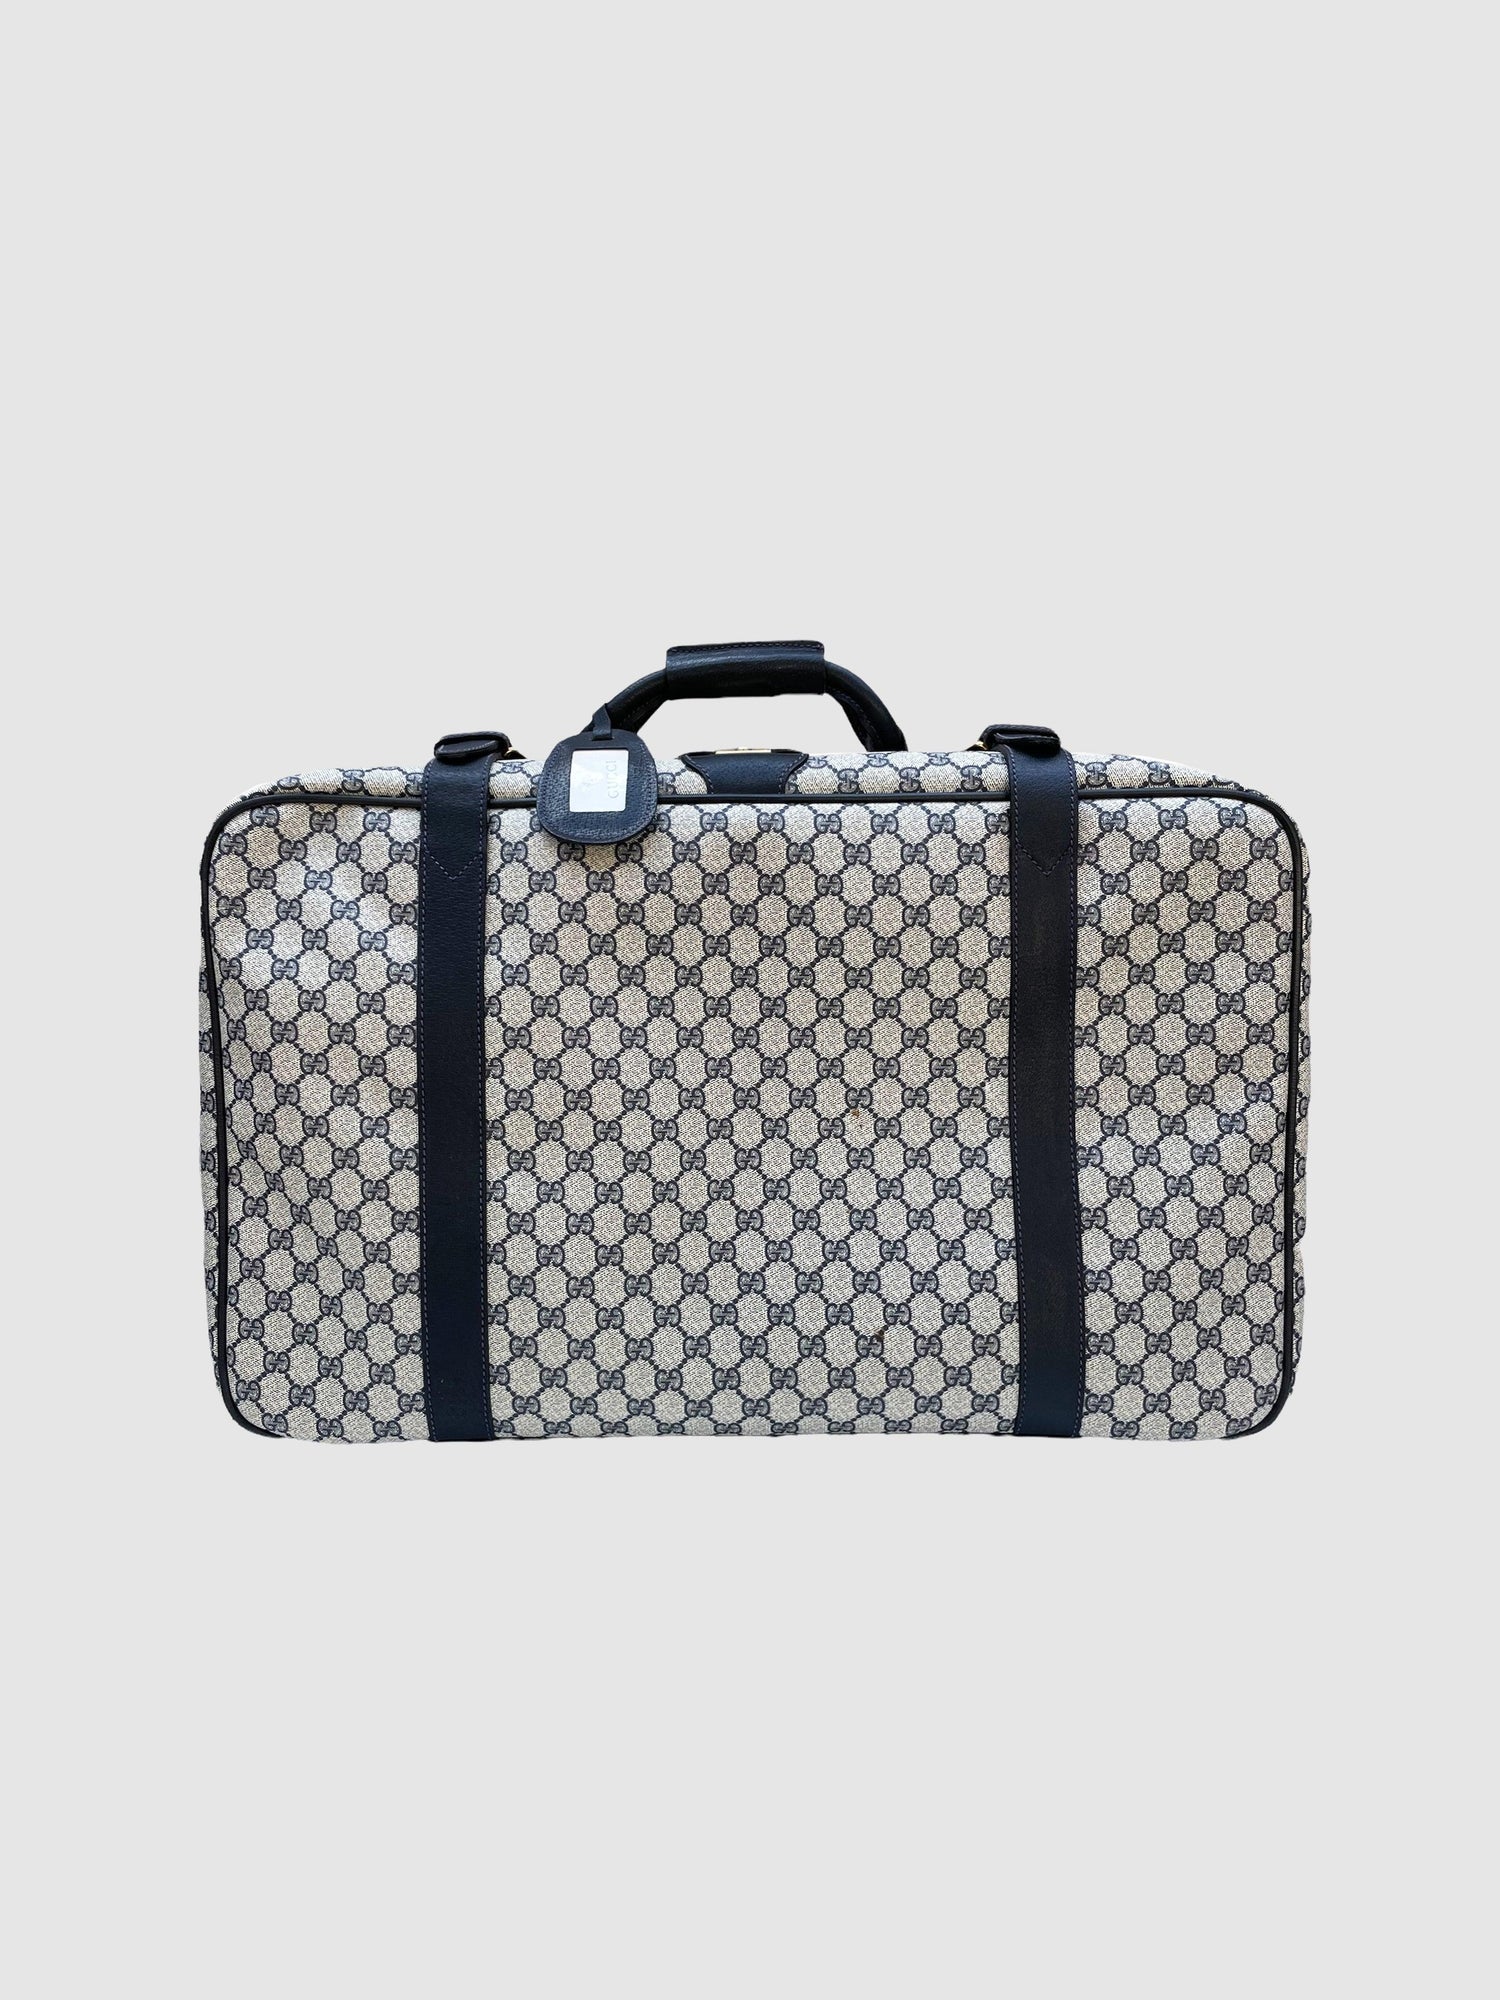 Gucci Vintage Suitcase Travel Bag Medium - Second Nature Boutique